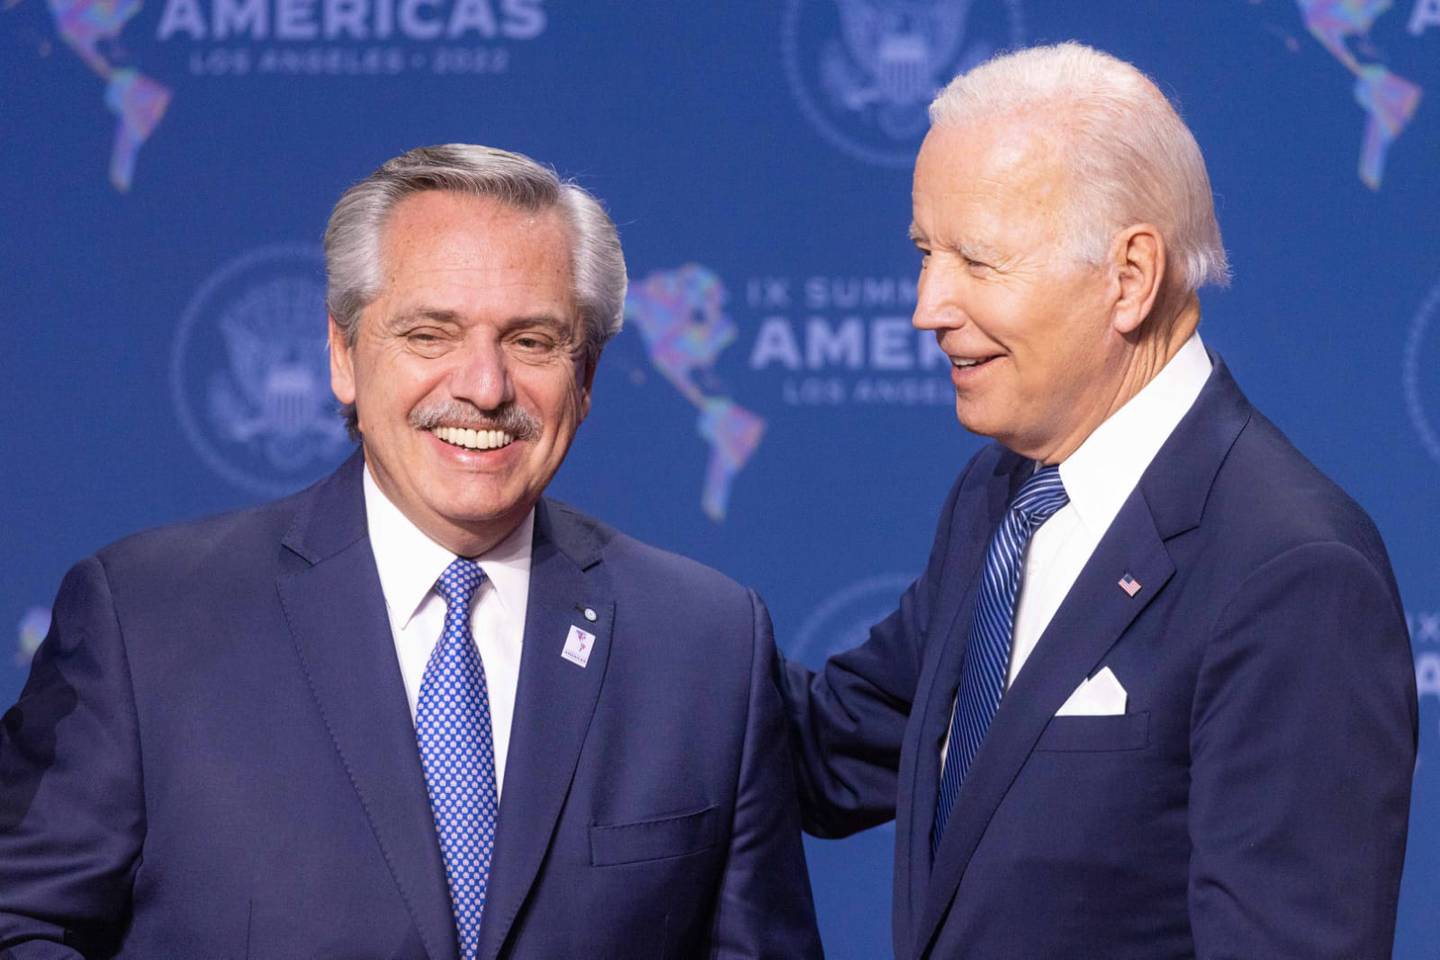 Alberto Fernández se saludó este miércoles por la noche con el presidente de los Estados Unidos, Joseph Biden. No está previsto un encuentro bilateral entre ambos mandatarios. Foto: Presidenciadfd